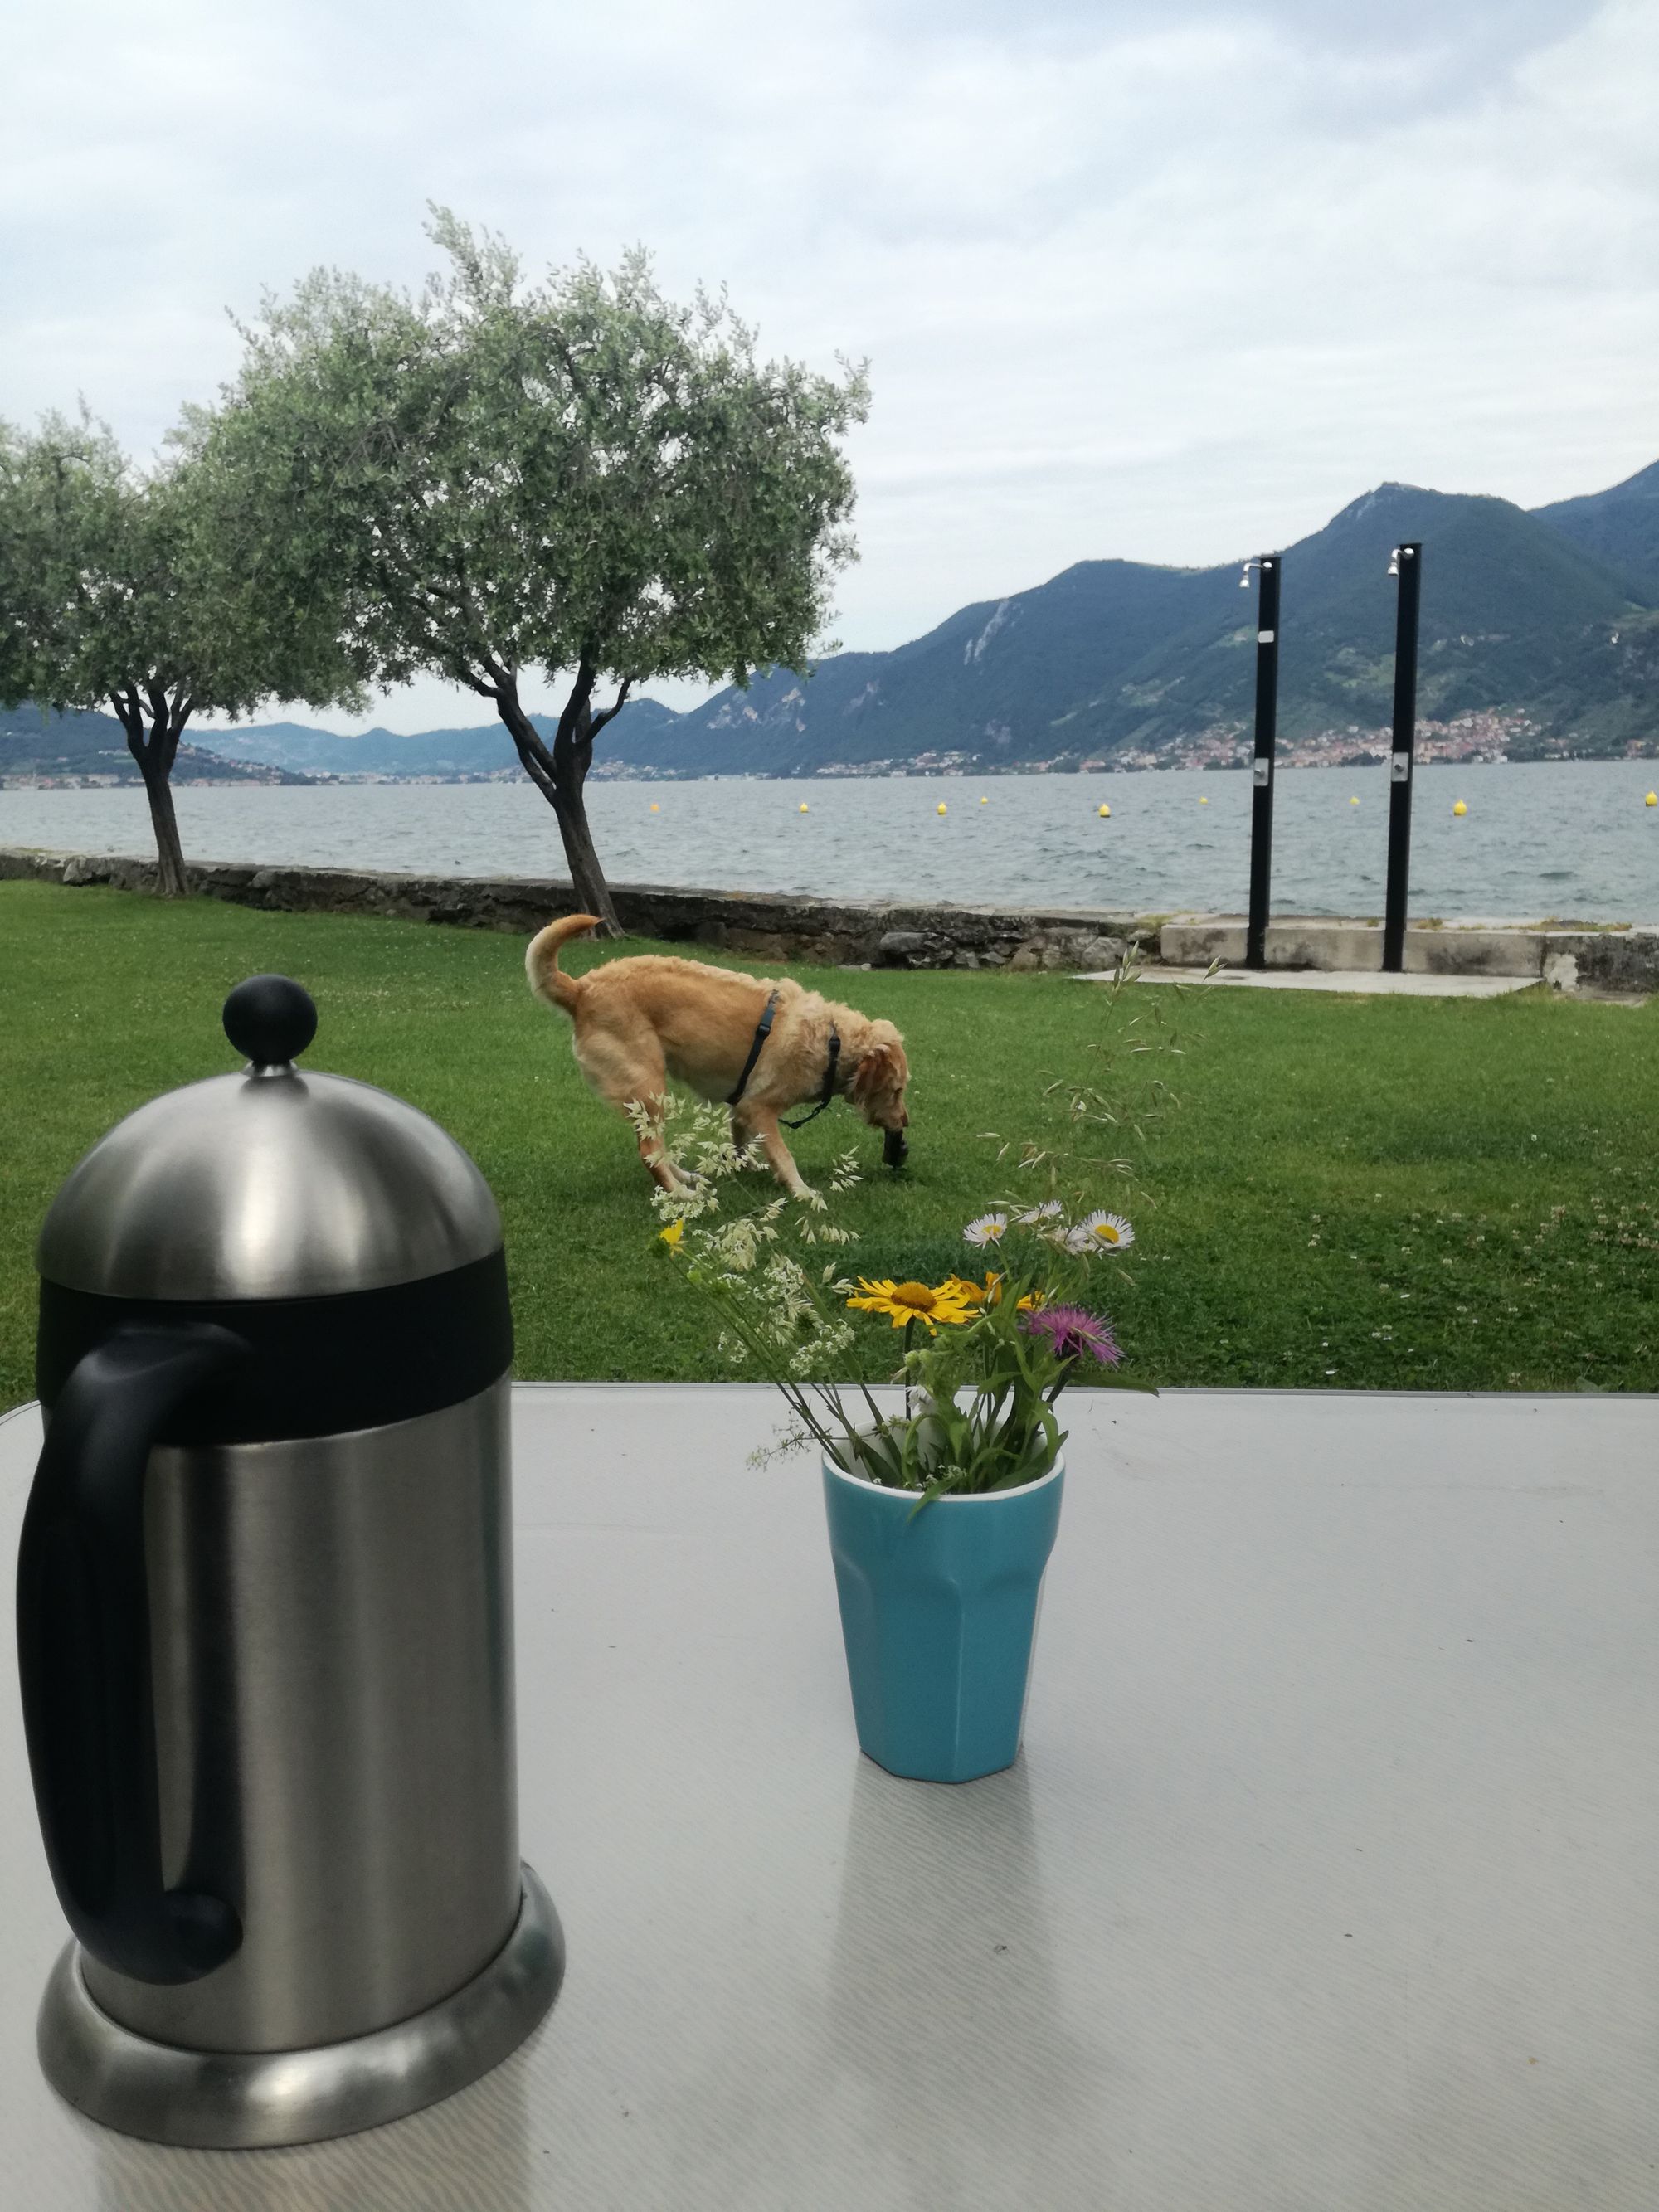 Blick auf Campingtisch mit Kaffekanne und Blumen, dahinter spielt ein Hund vor dem Seepanorama.